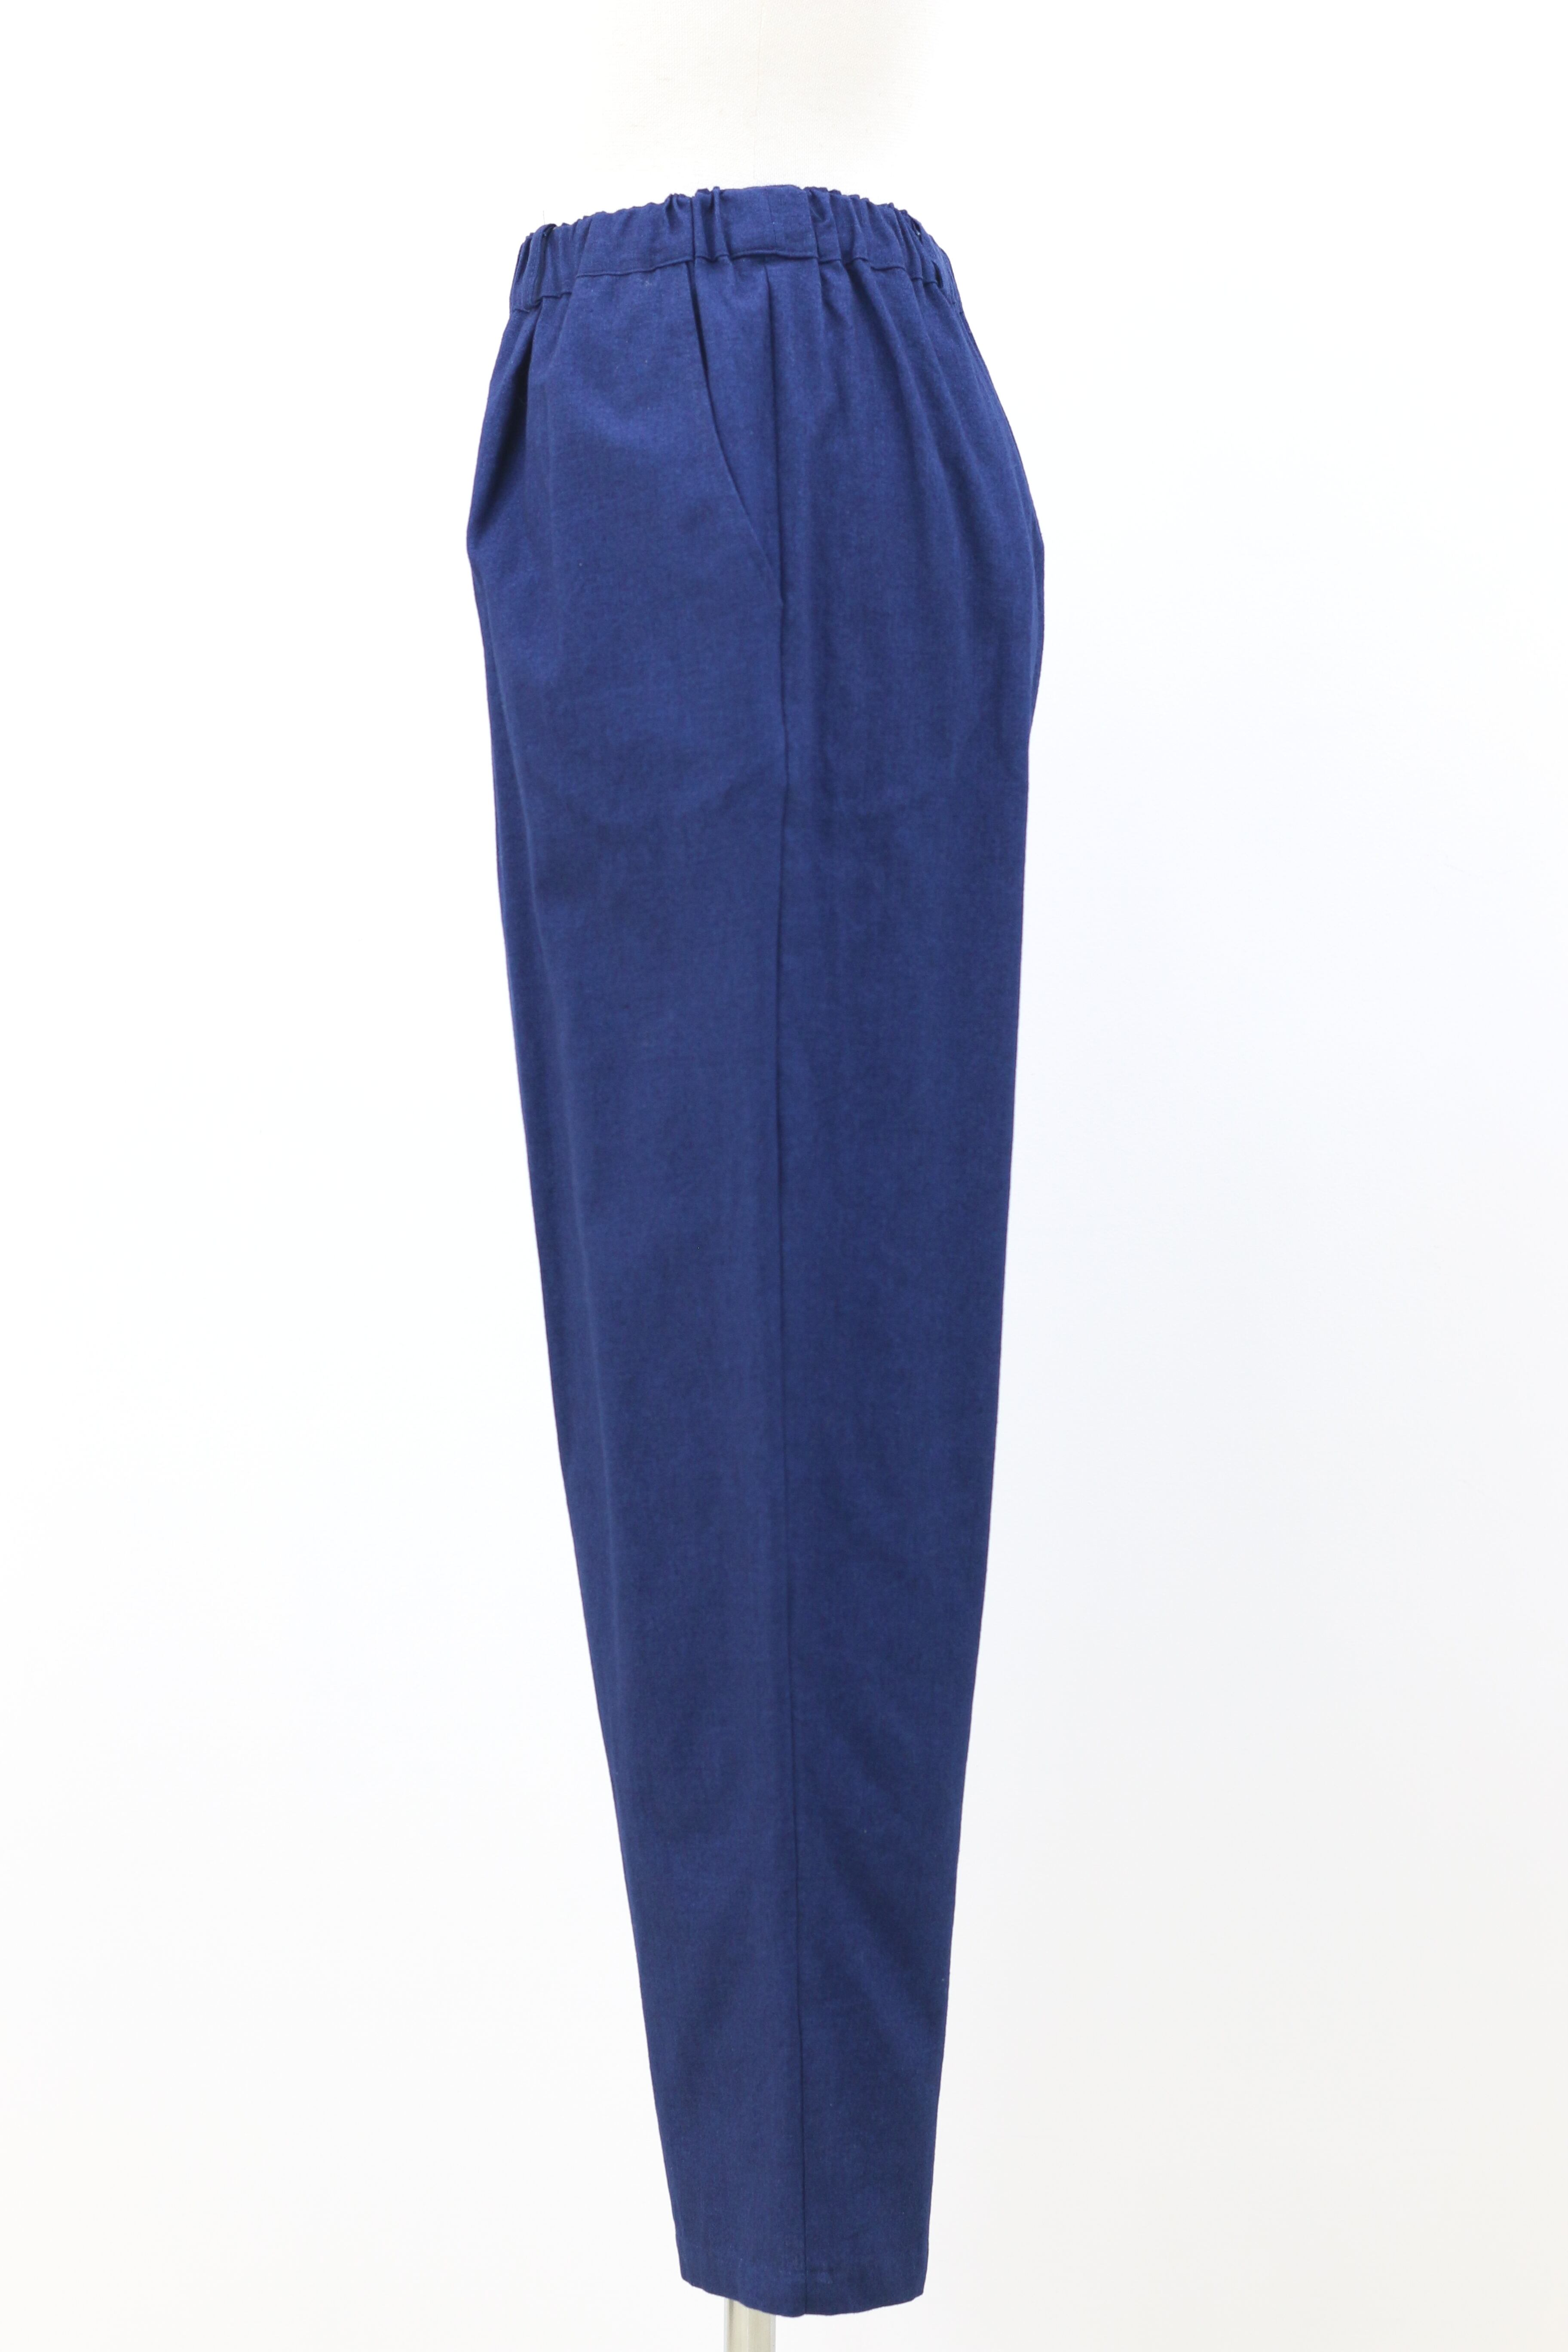 インディゴ平織りテーパードパンツ 藍染 ＷＷ-1869 | momochishop